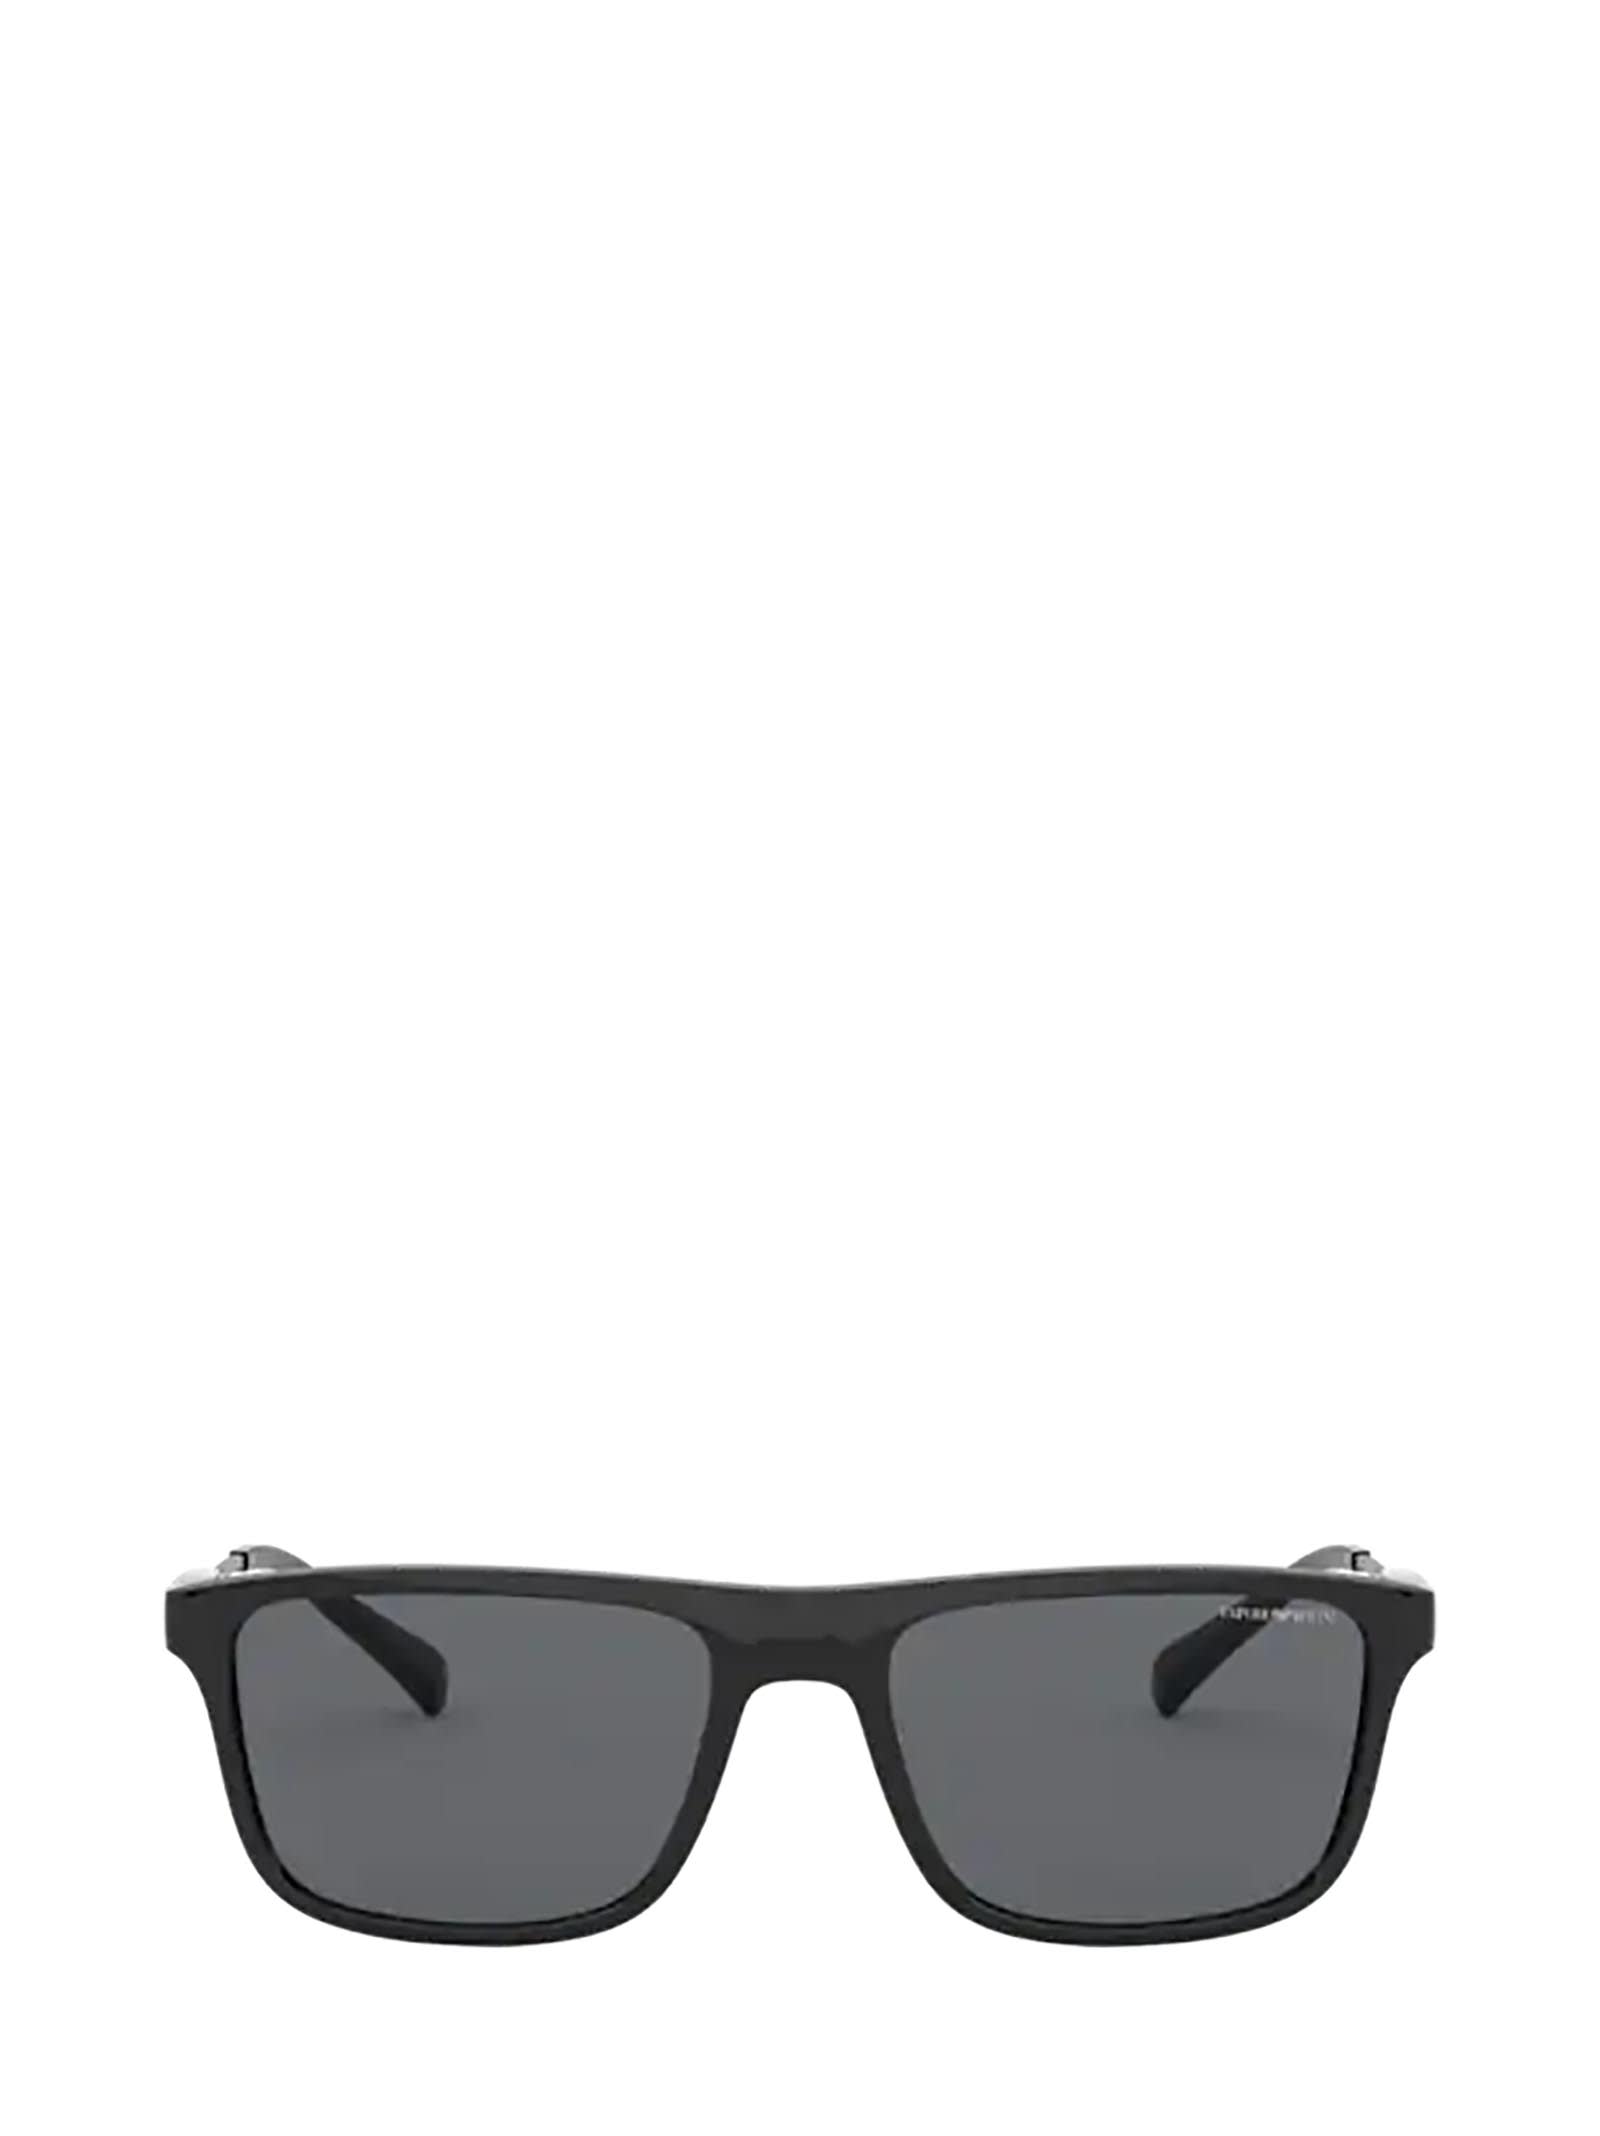 Emporio Armani Emporio Armani Ea4151 Shiny Black Sunglasses